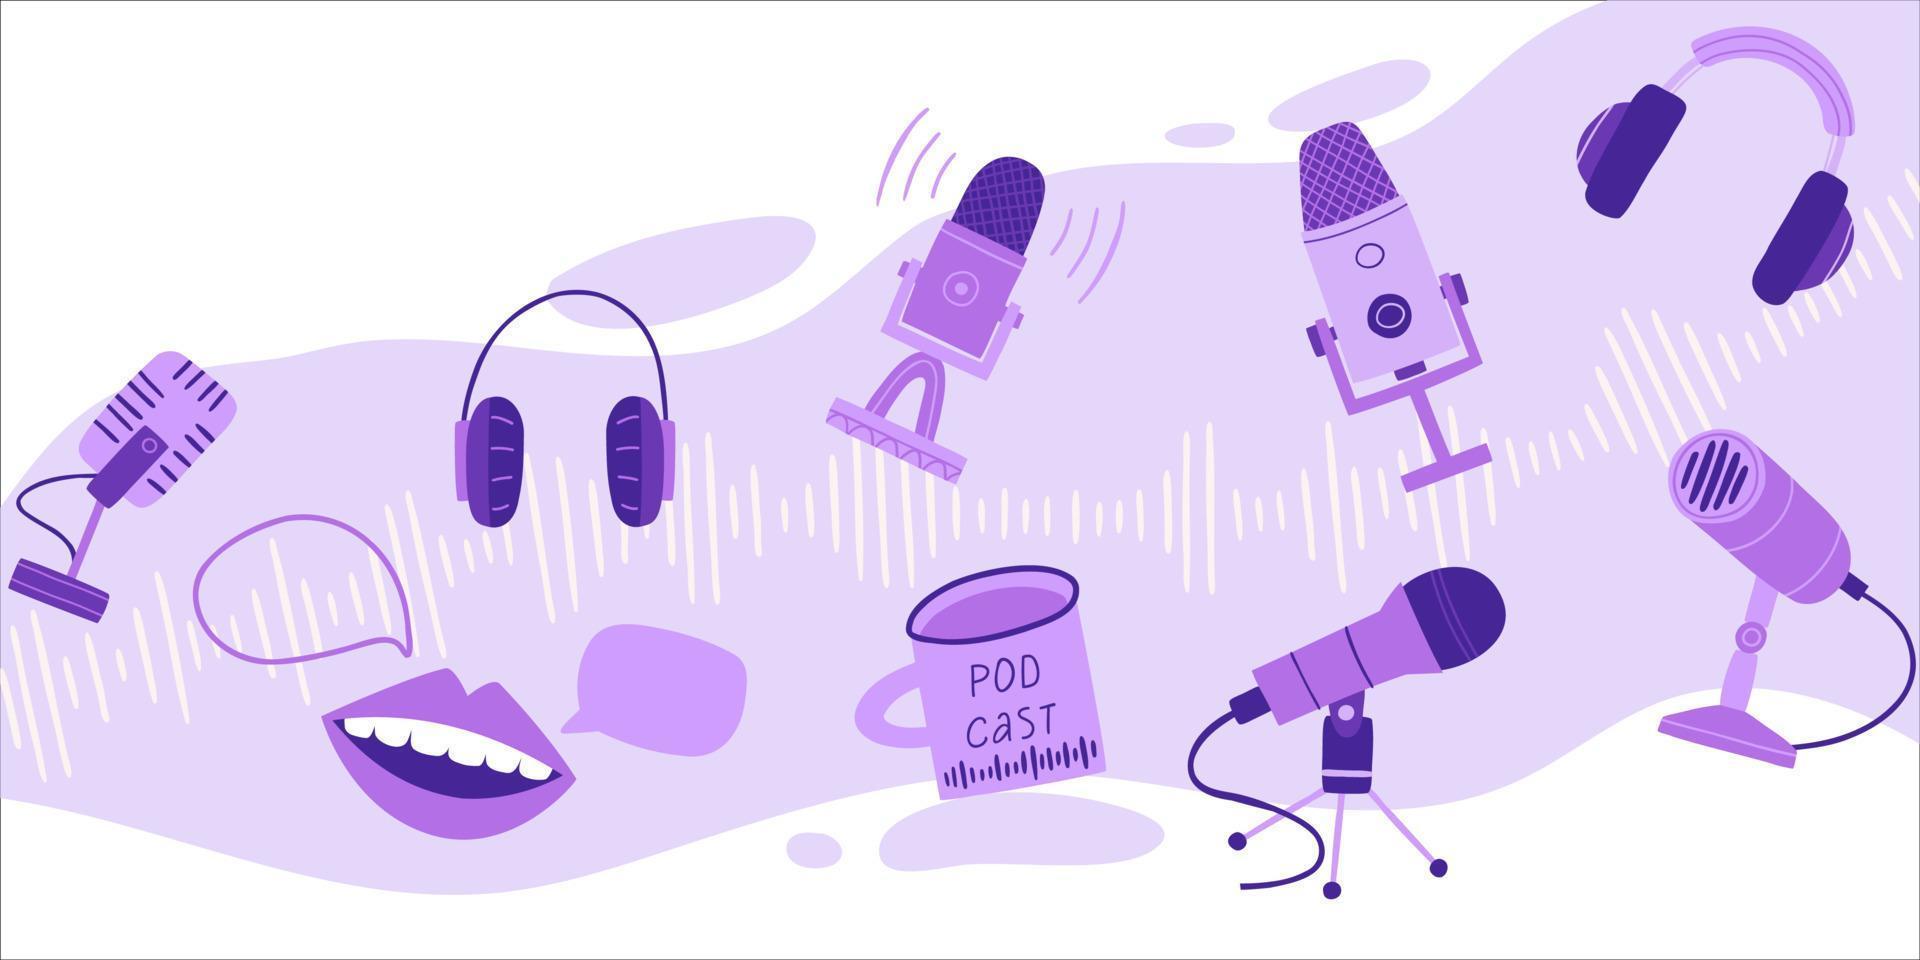 Podcast-Cover-Design in trendigem Stil und lila Samtfarbe. Mikrofone, Tonaufnahmegeräte, Kopfhörer, eine Möwe mit einem heißen Getränk. flache gezeichnete illustration des vektors hand. vektor